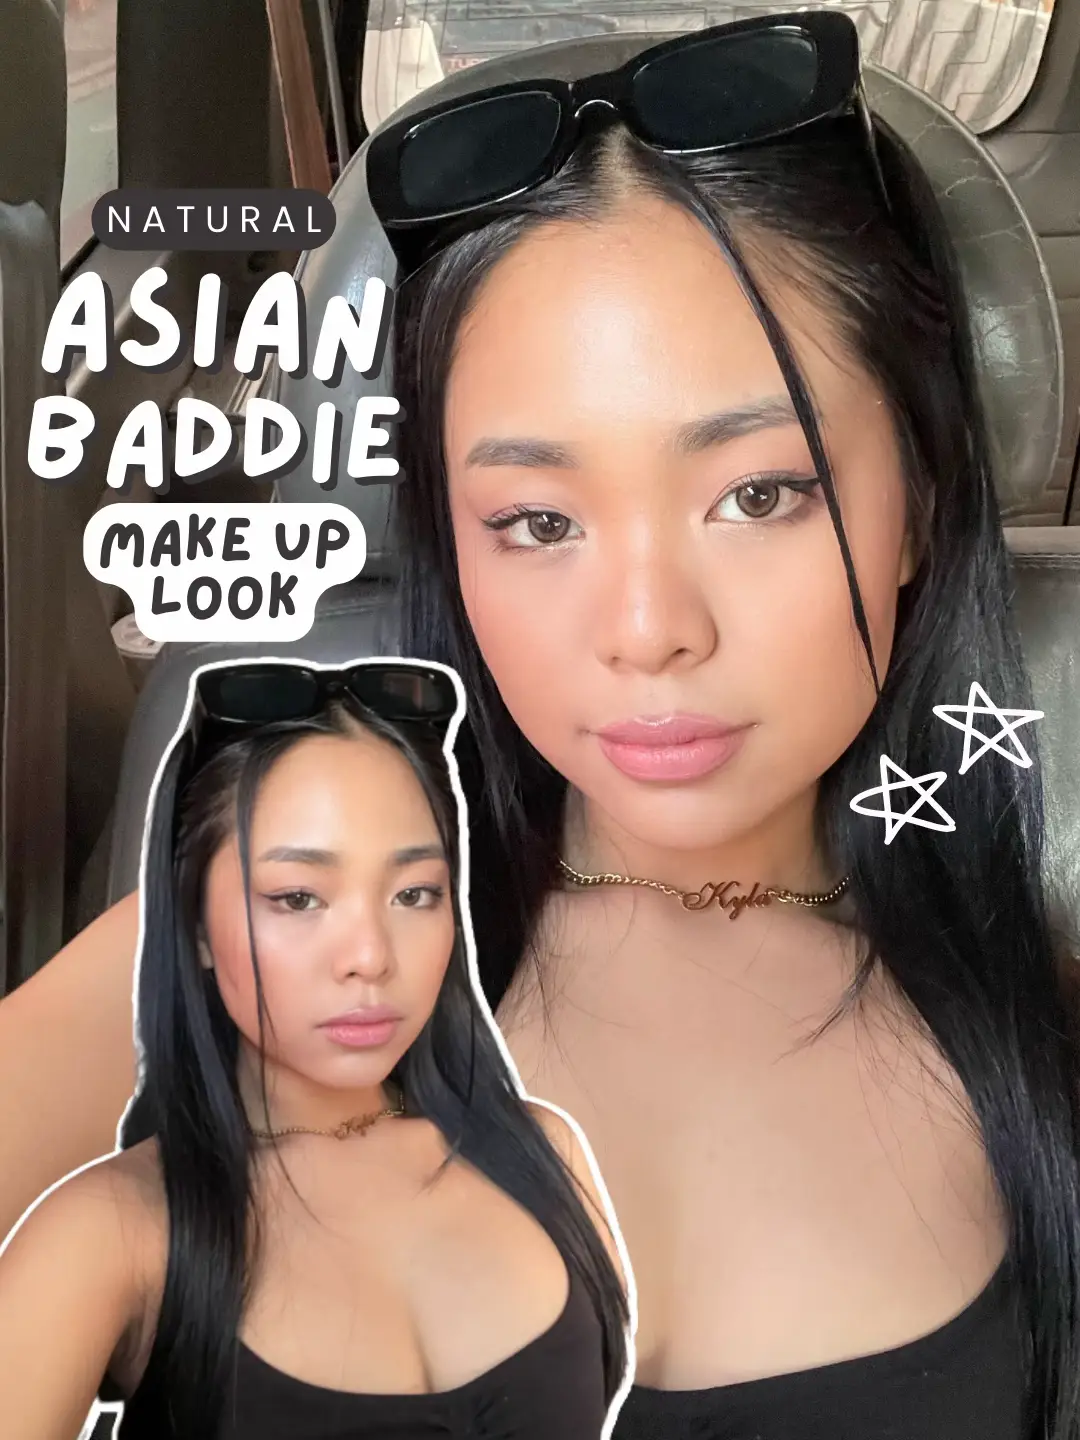 Natural Asian Baddie Look! ⛓🖤 | Gallery posted by kylabacerdo | Lemon8